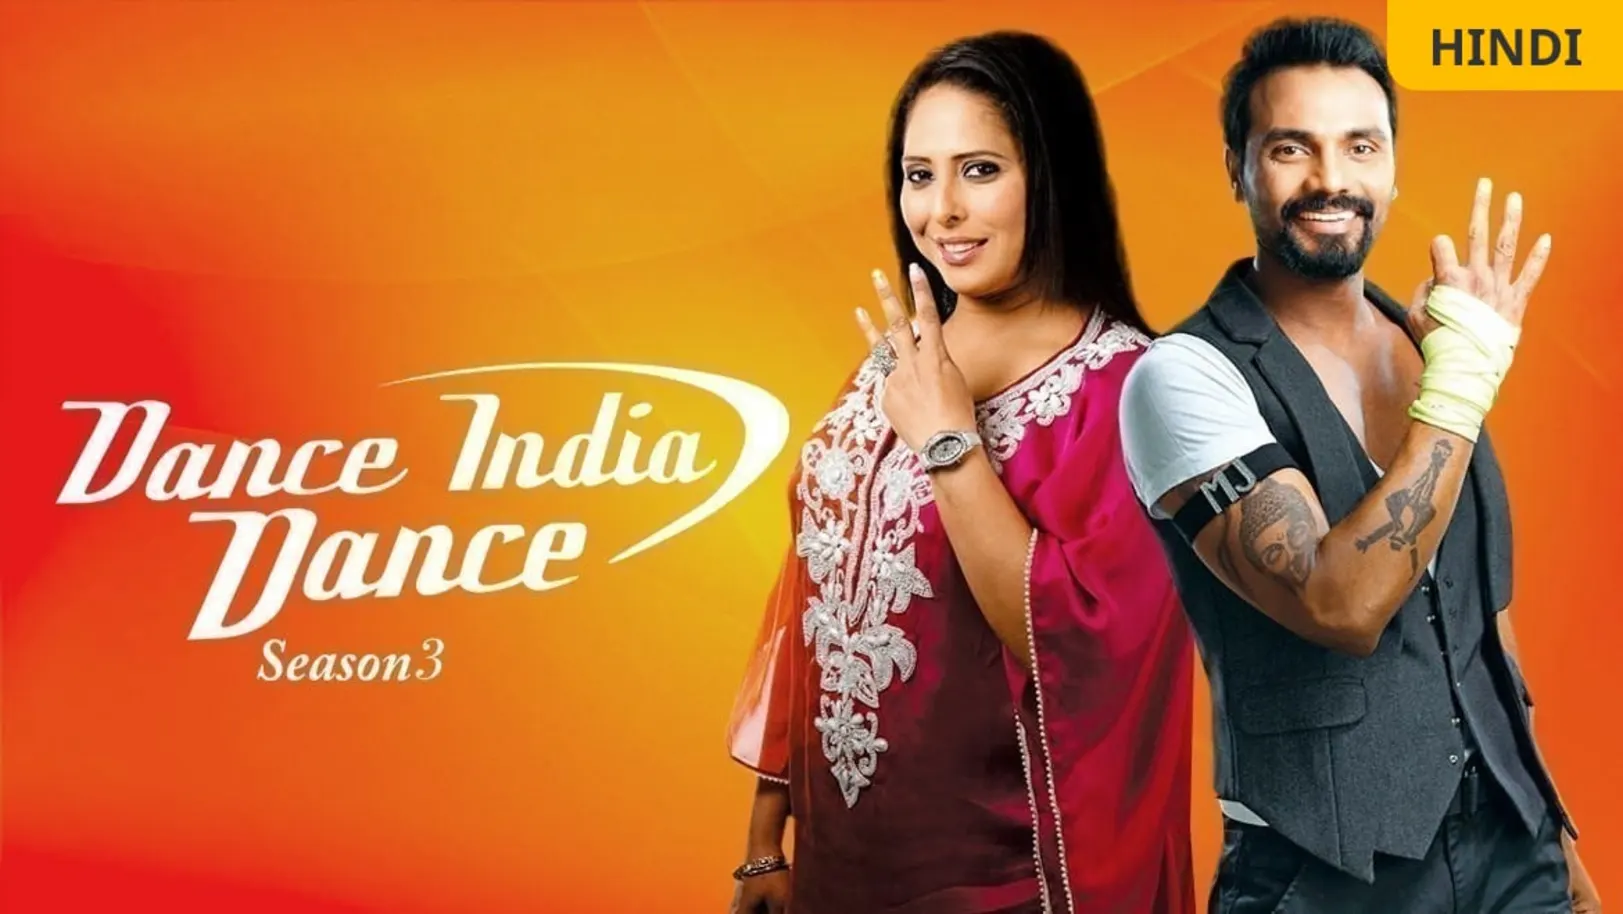 Dance India Dance Season 3 TV Show